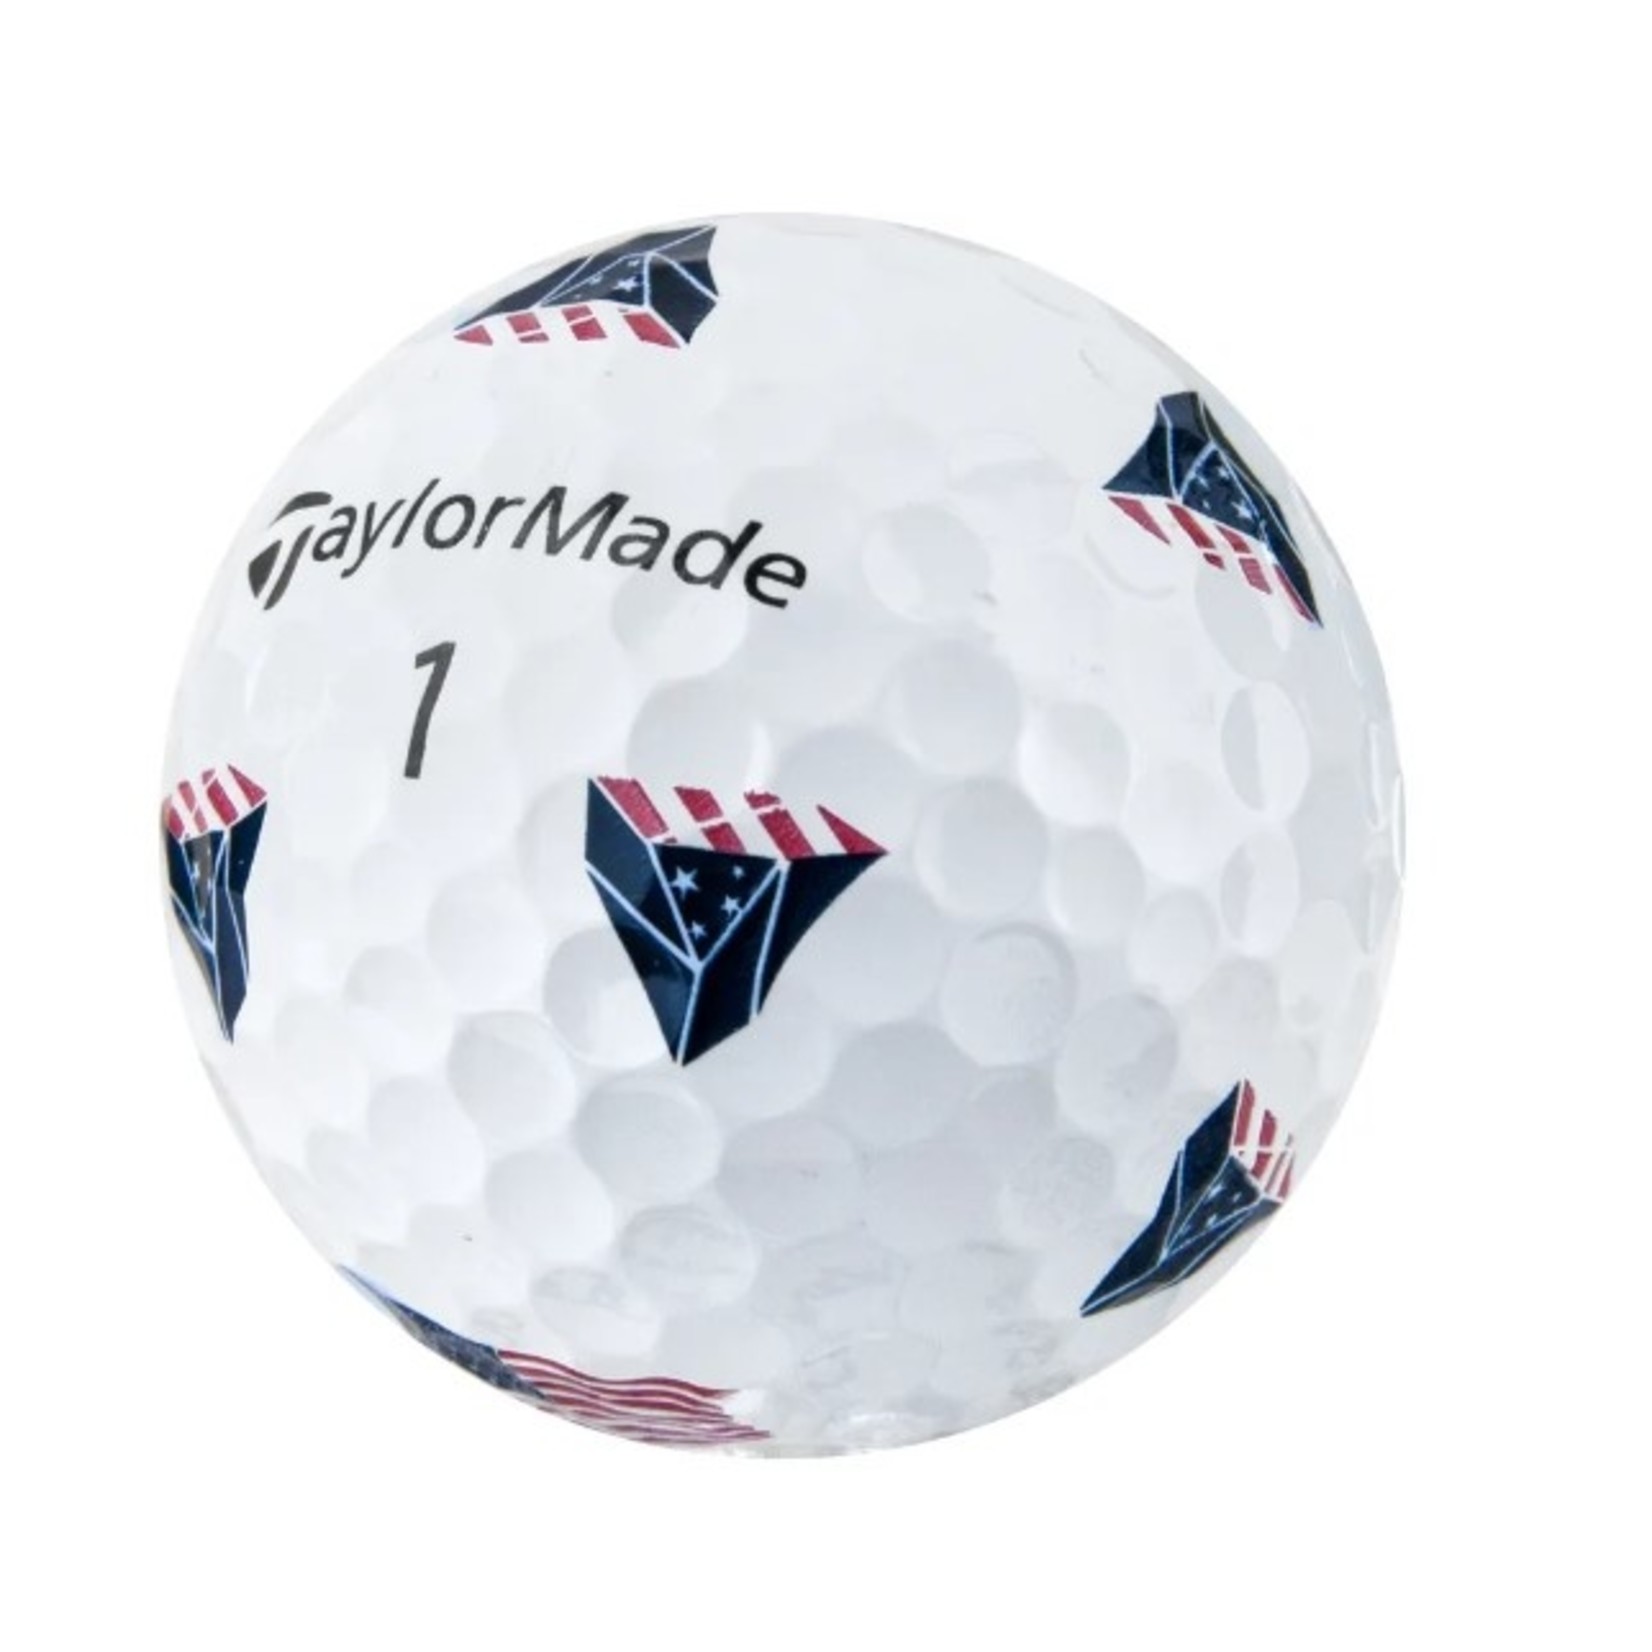 TAYLORMADE TP5 pix 2.0 USA Golf Balls